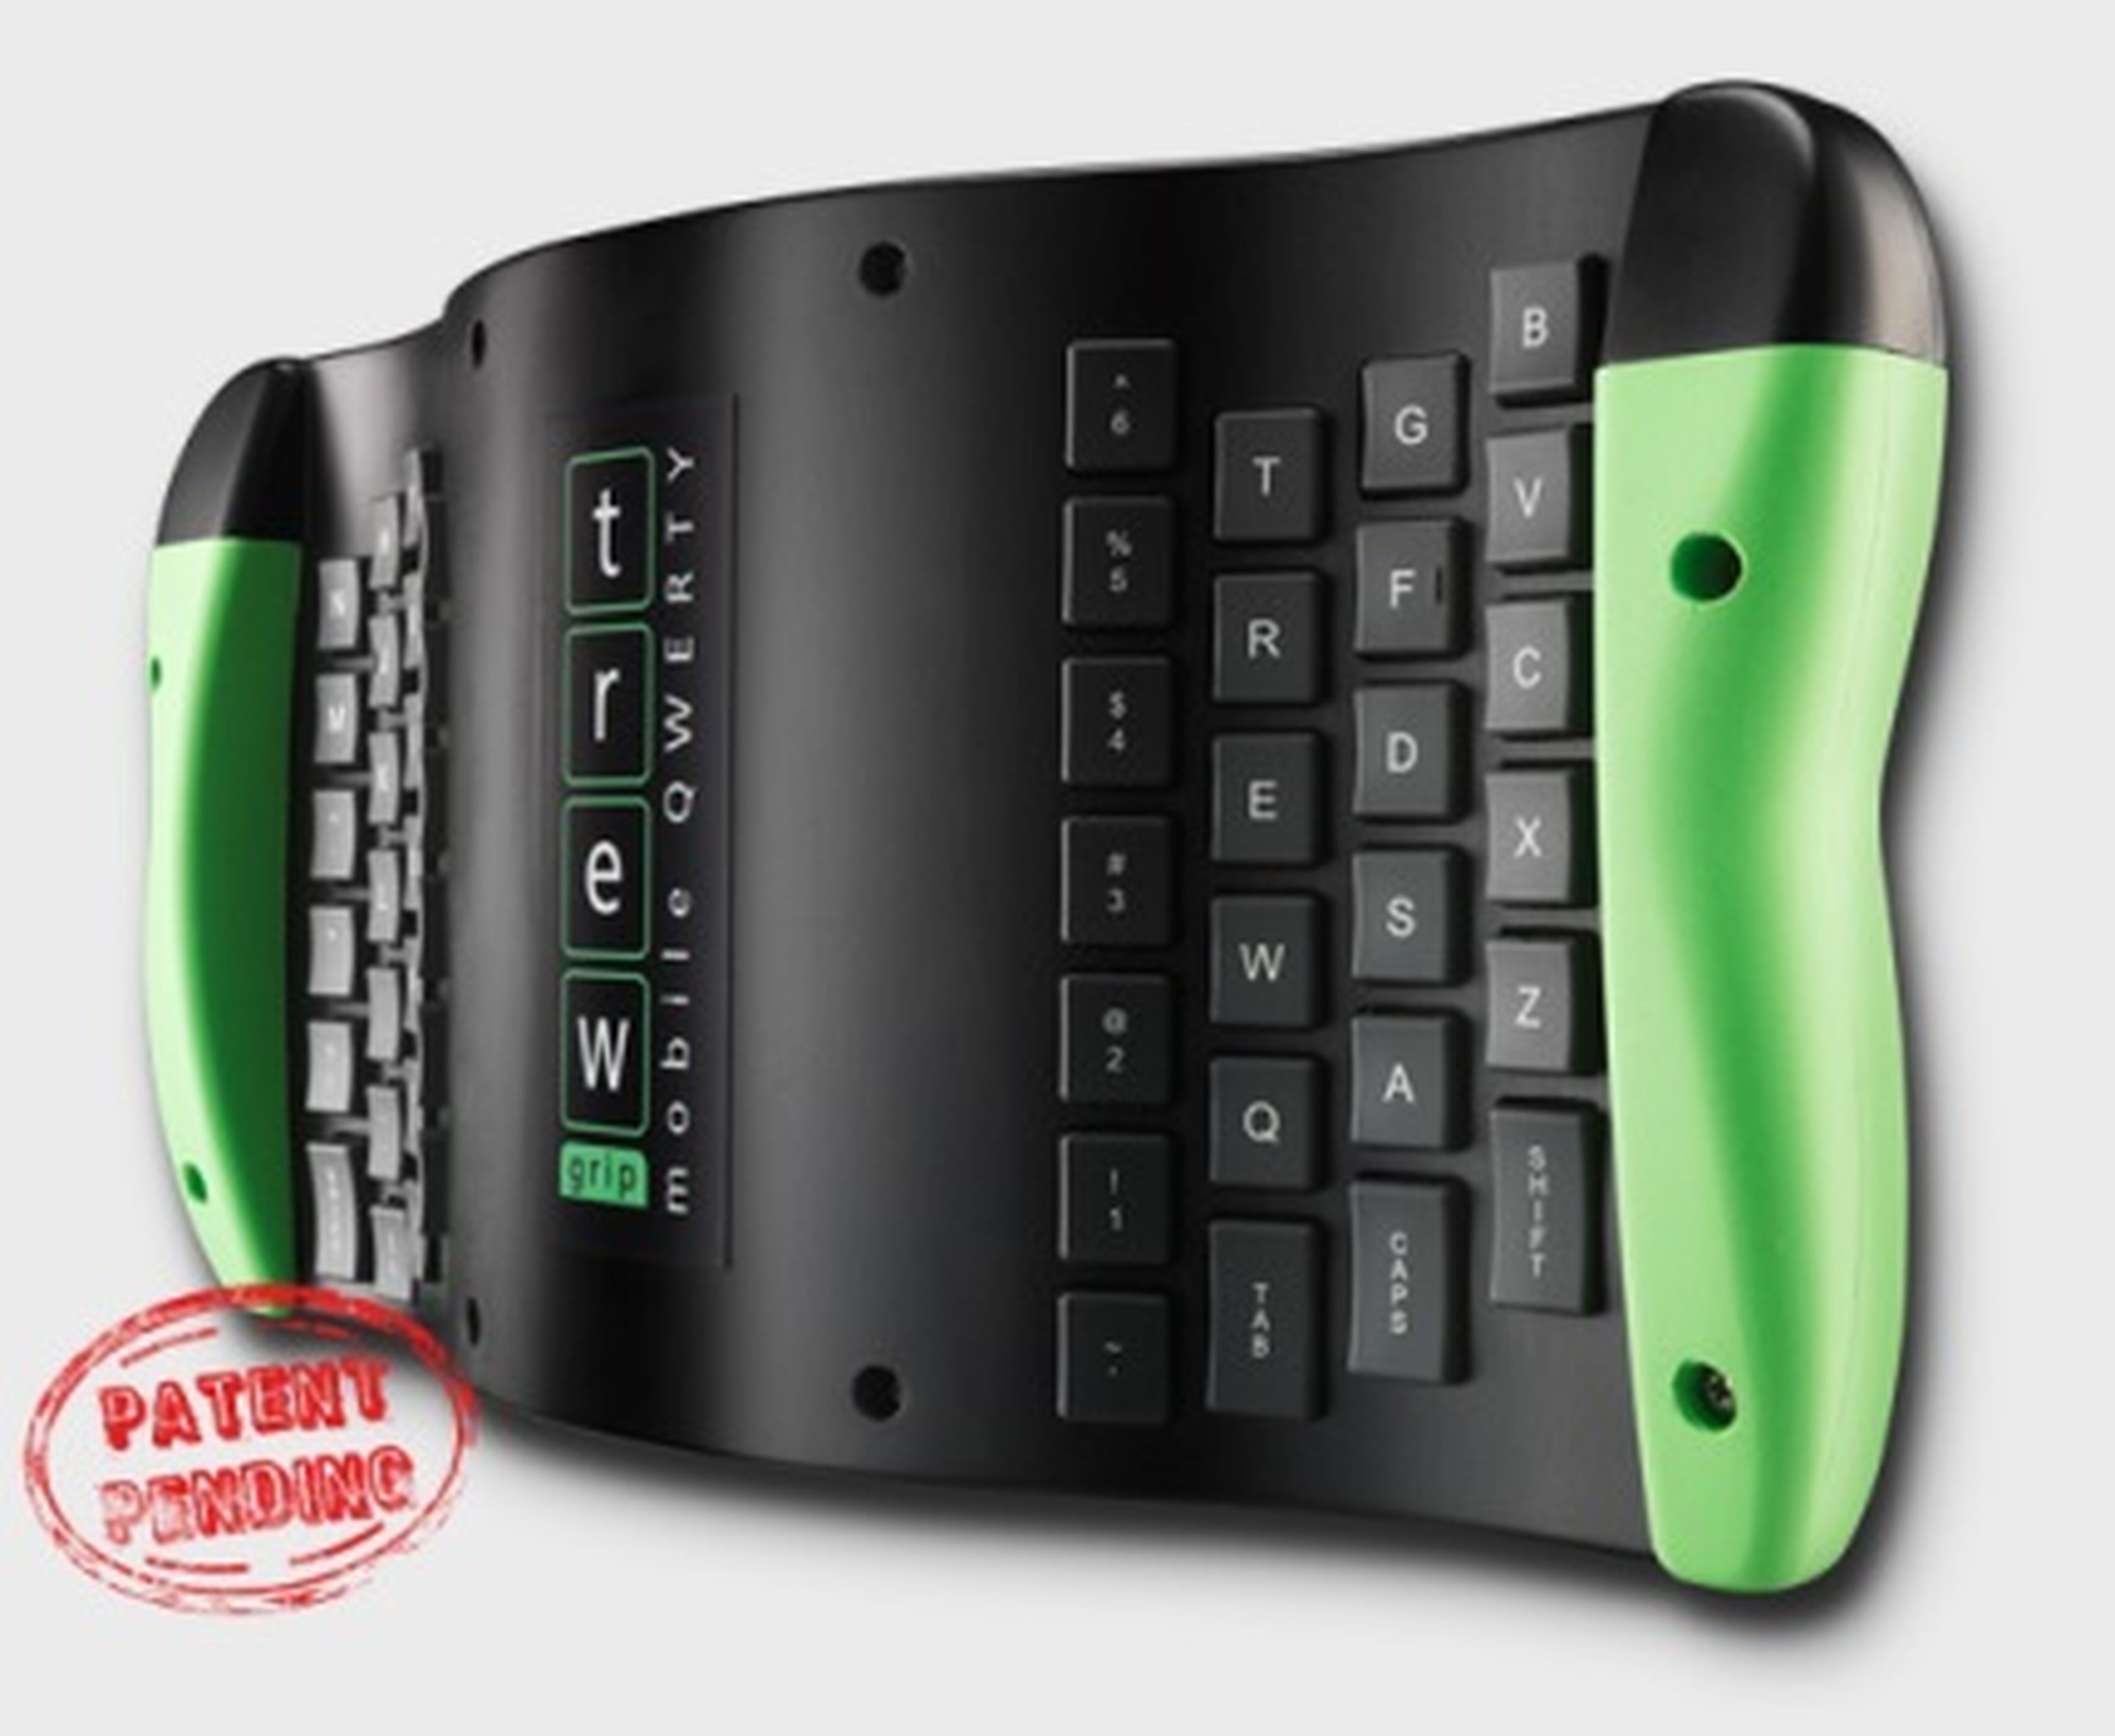 TREWGrip, teclado y ratón "air" para dispositivos móviles